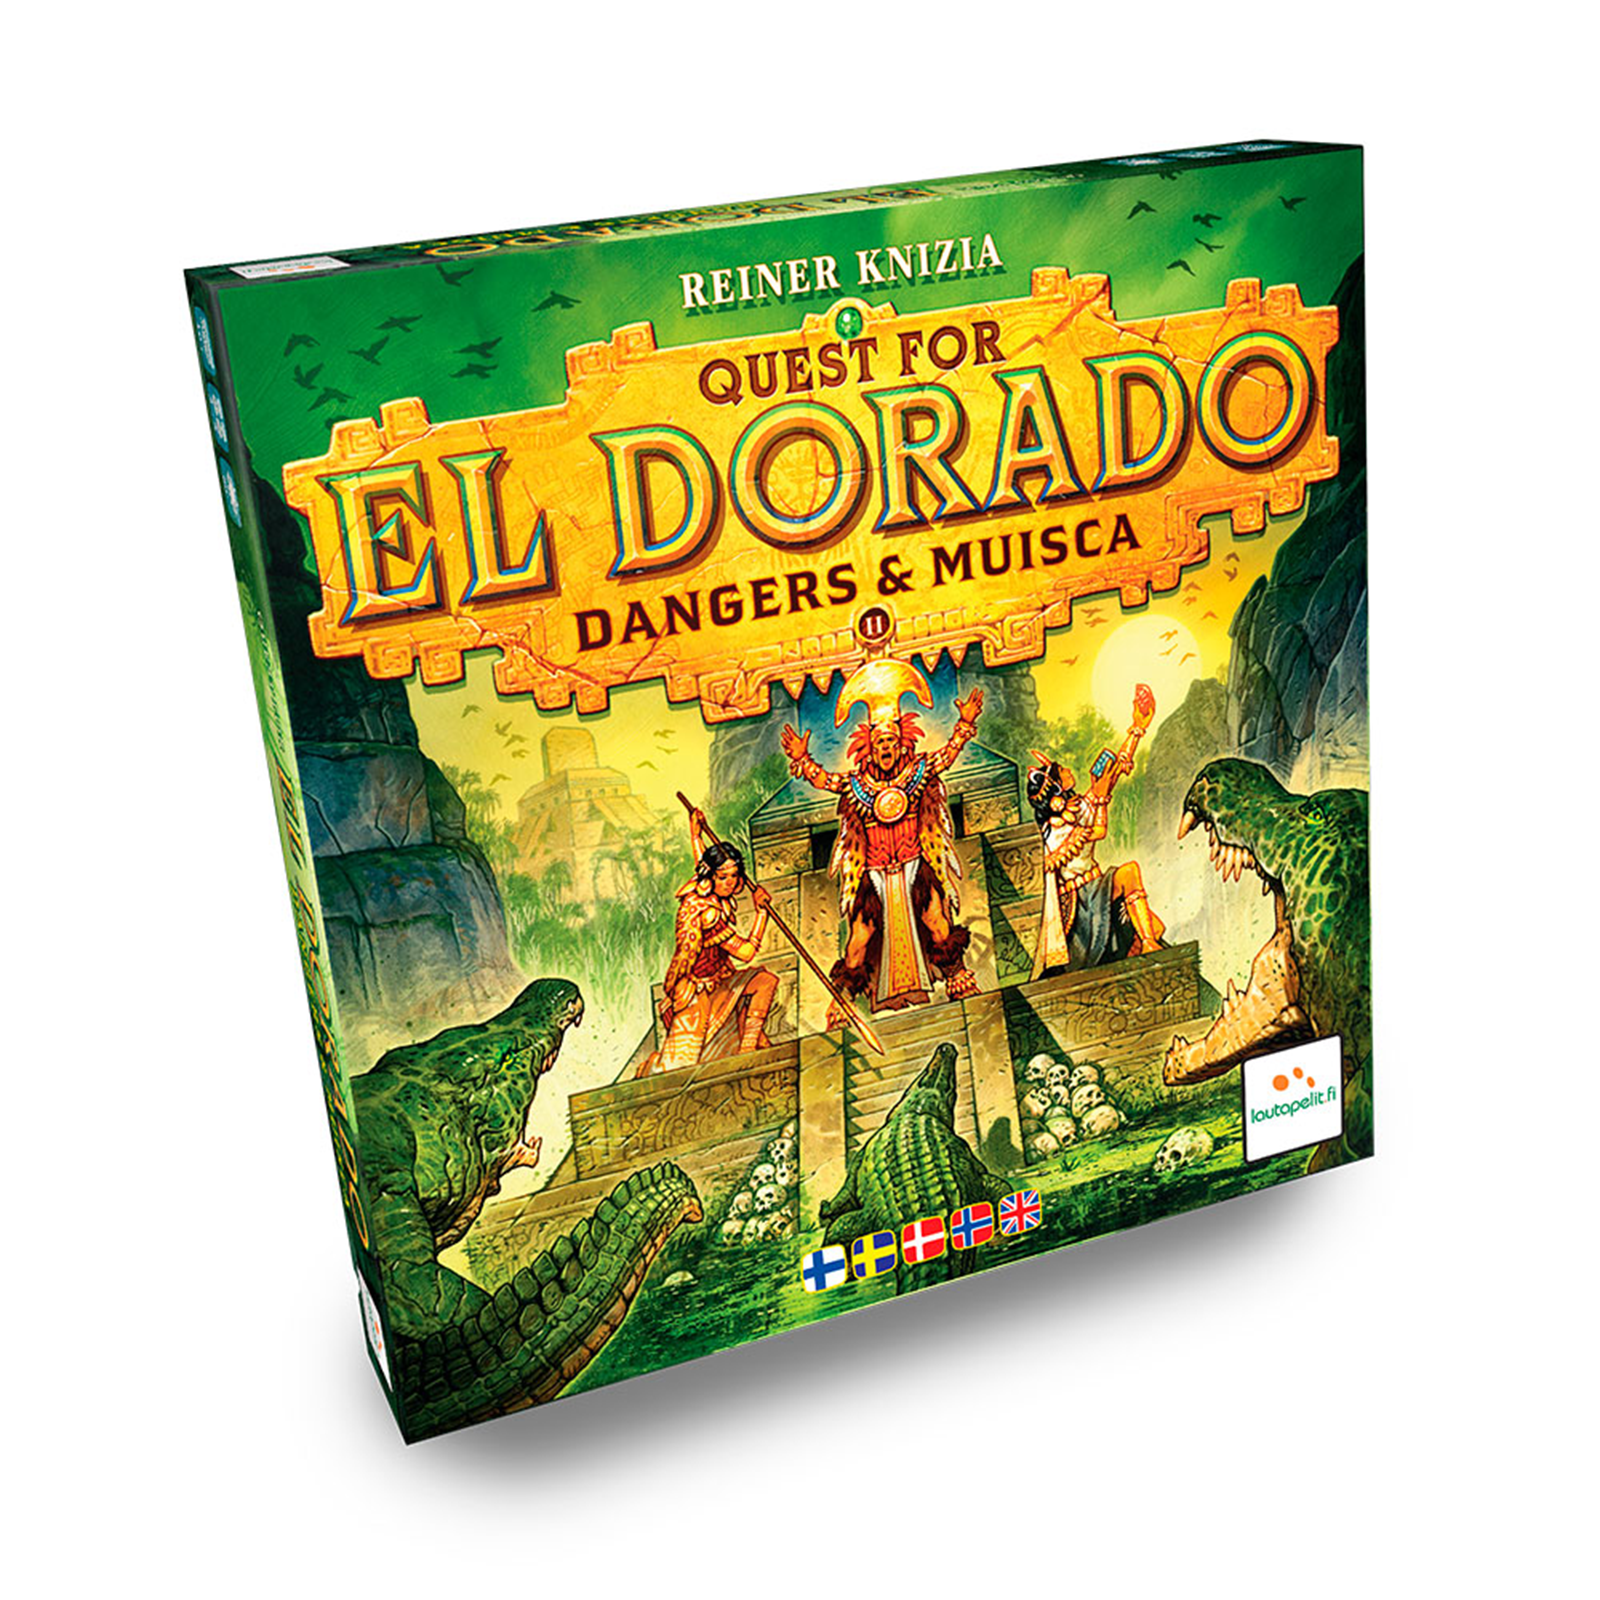 Billede af Quest for El Dorado - Dangers & Musica